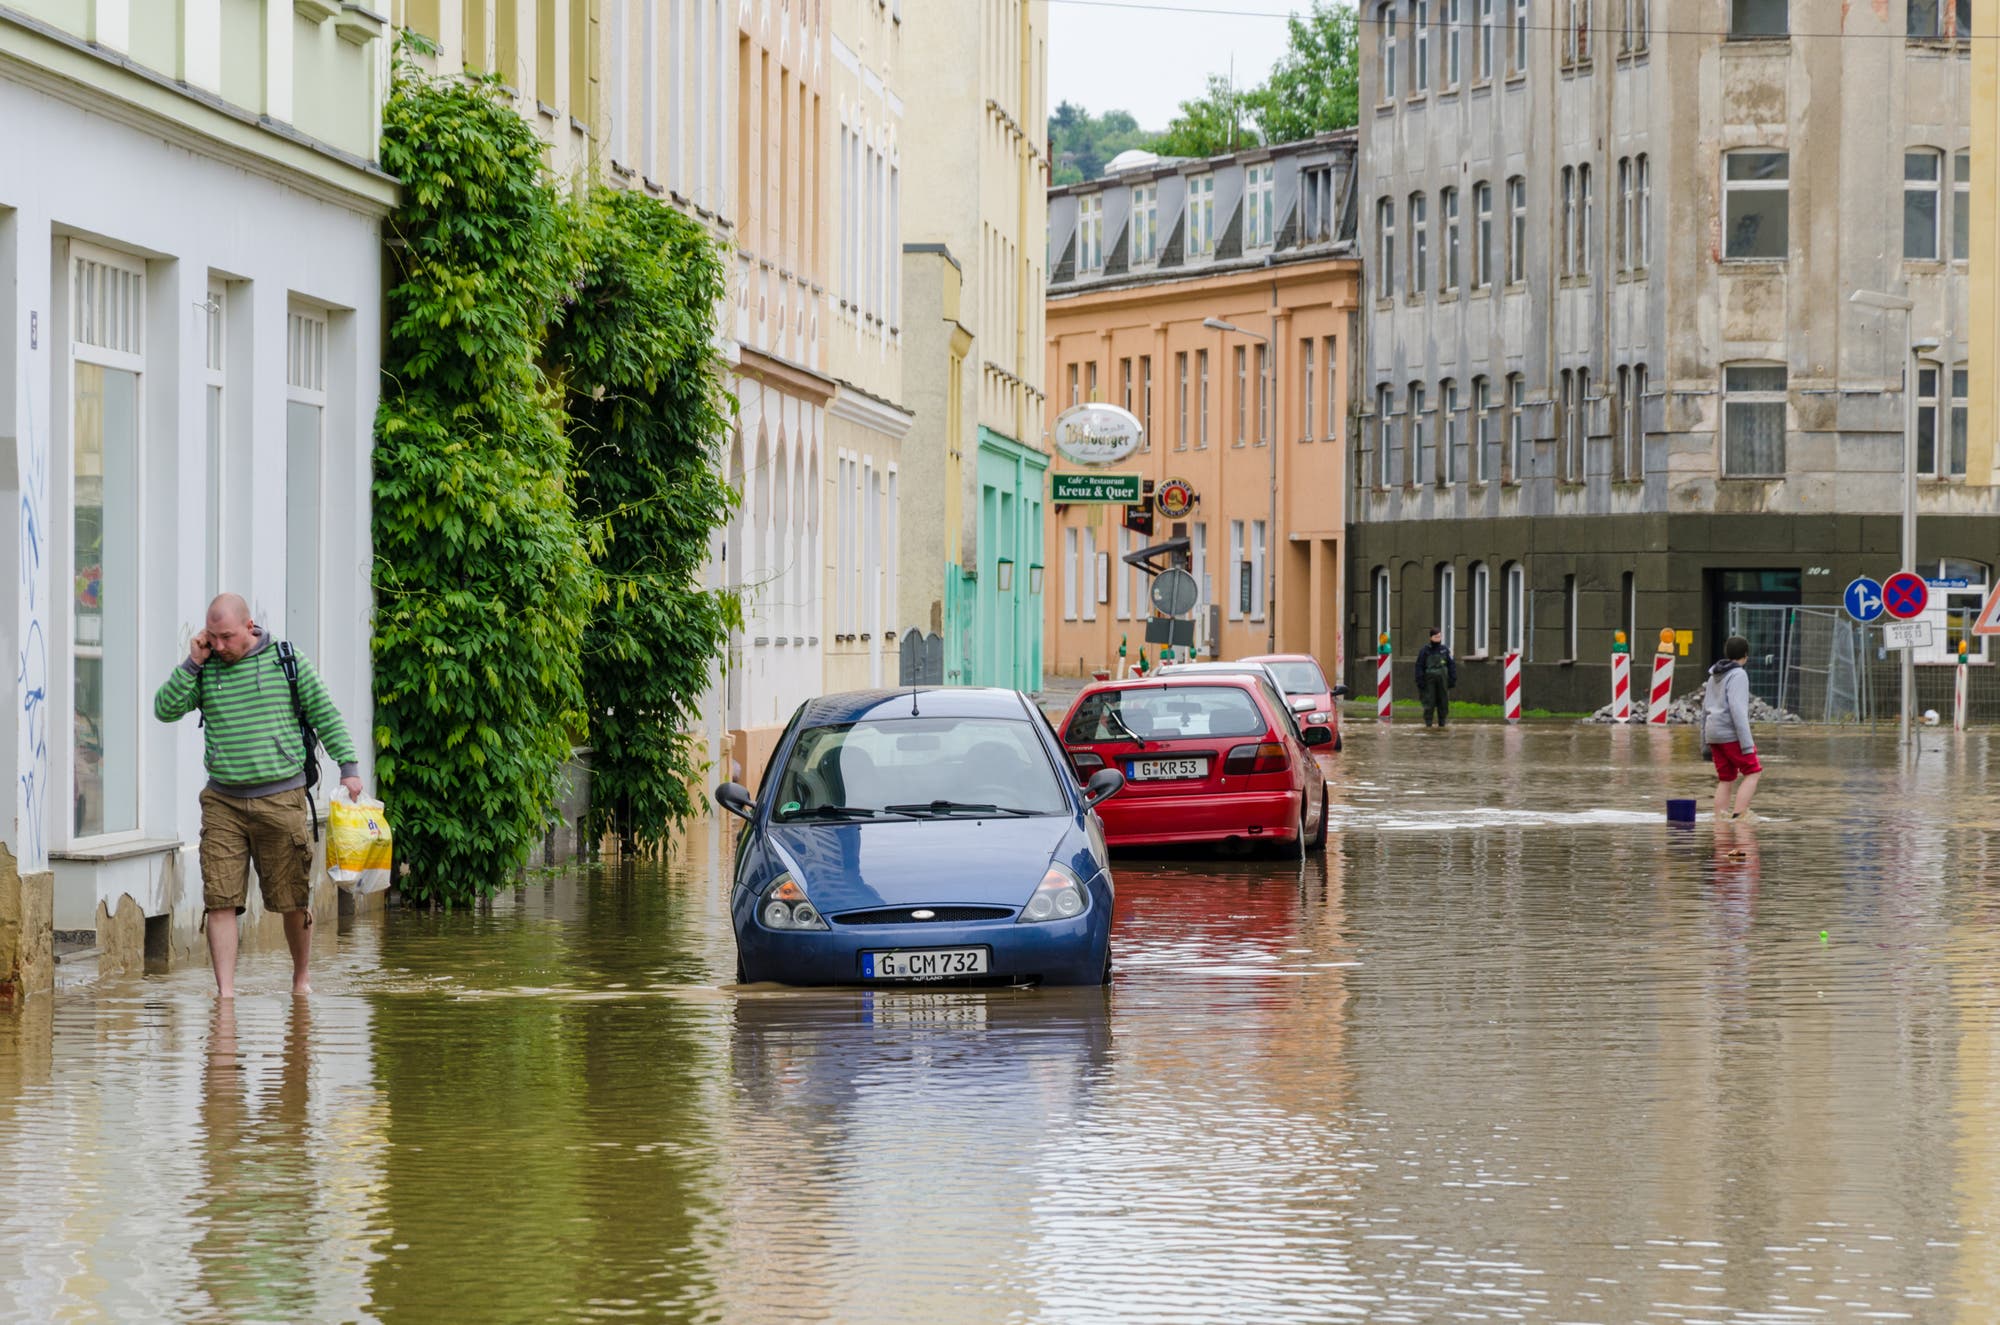 Überschwemmte Straße mit im Wasser stehenden Autos und vermutlich vollgelaufenen Kellern.